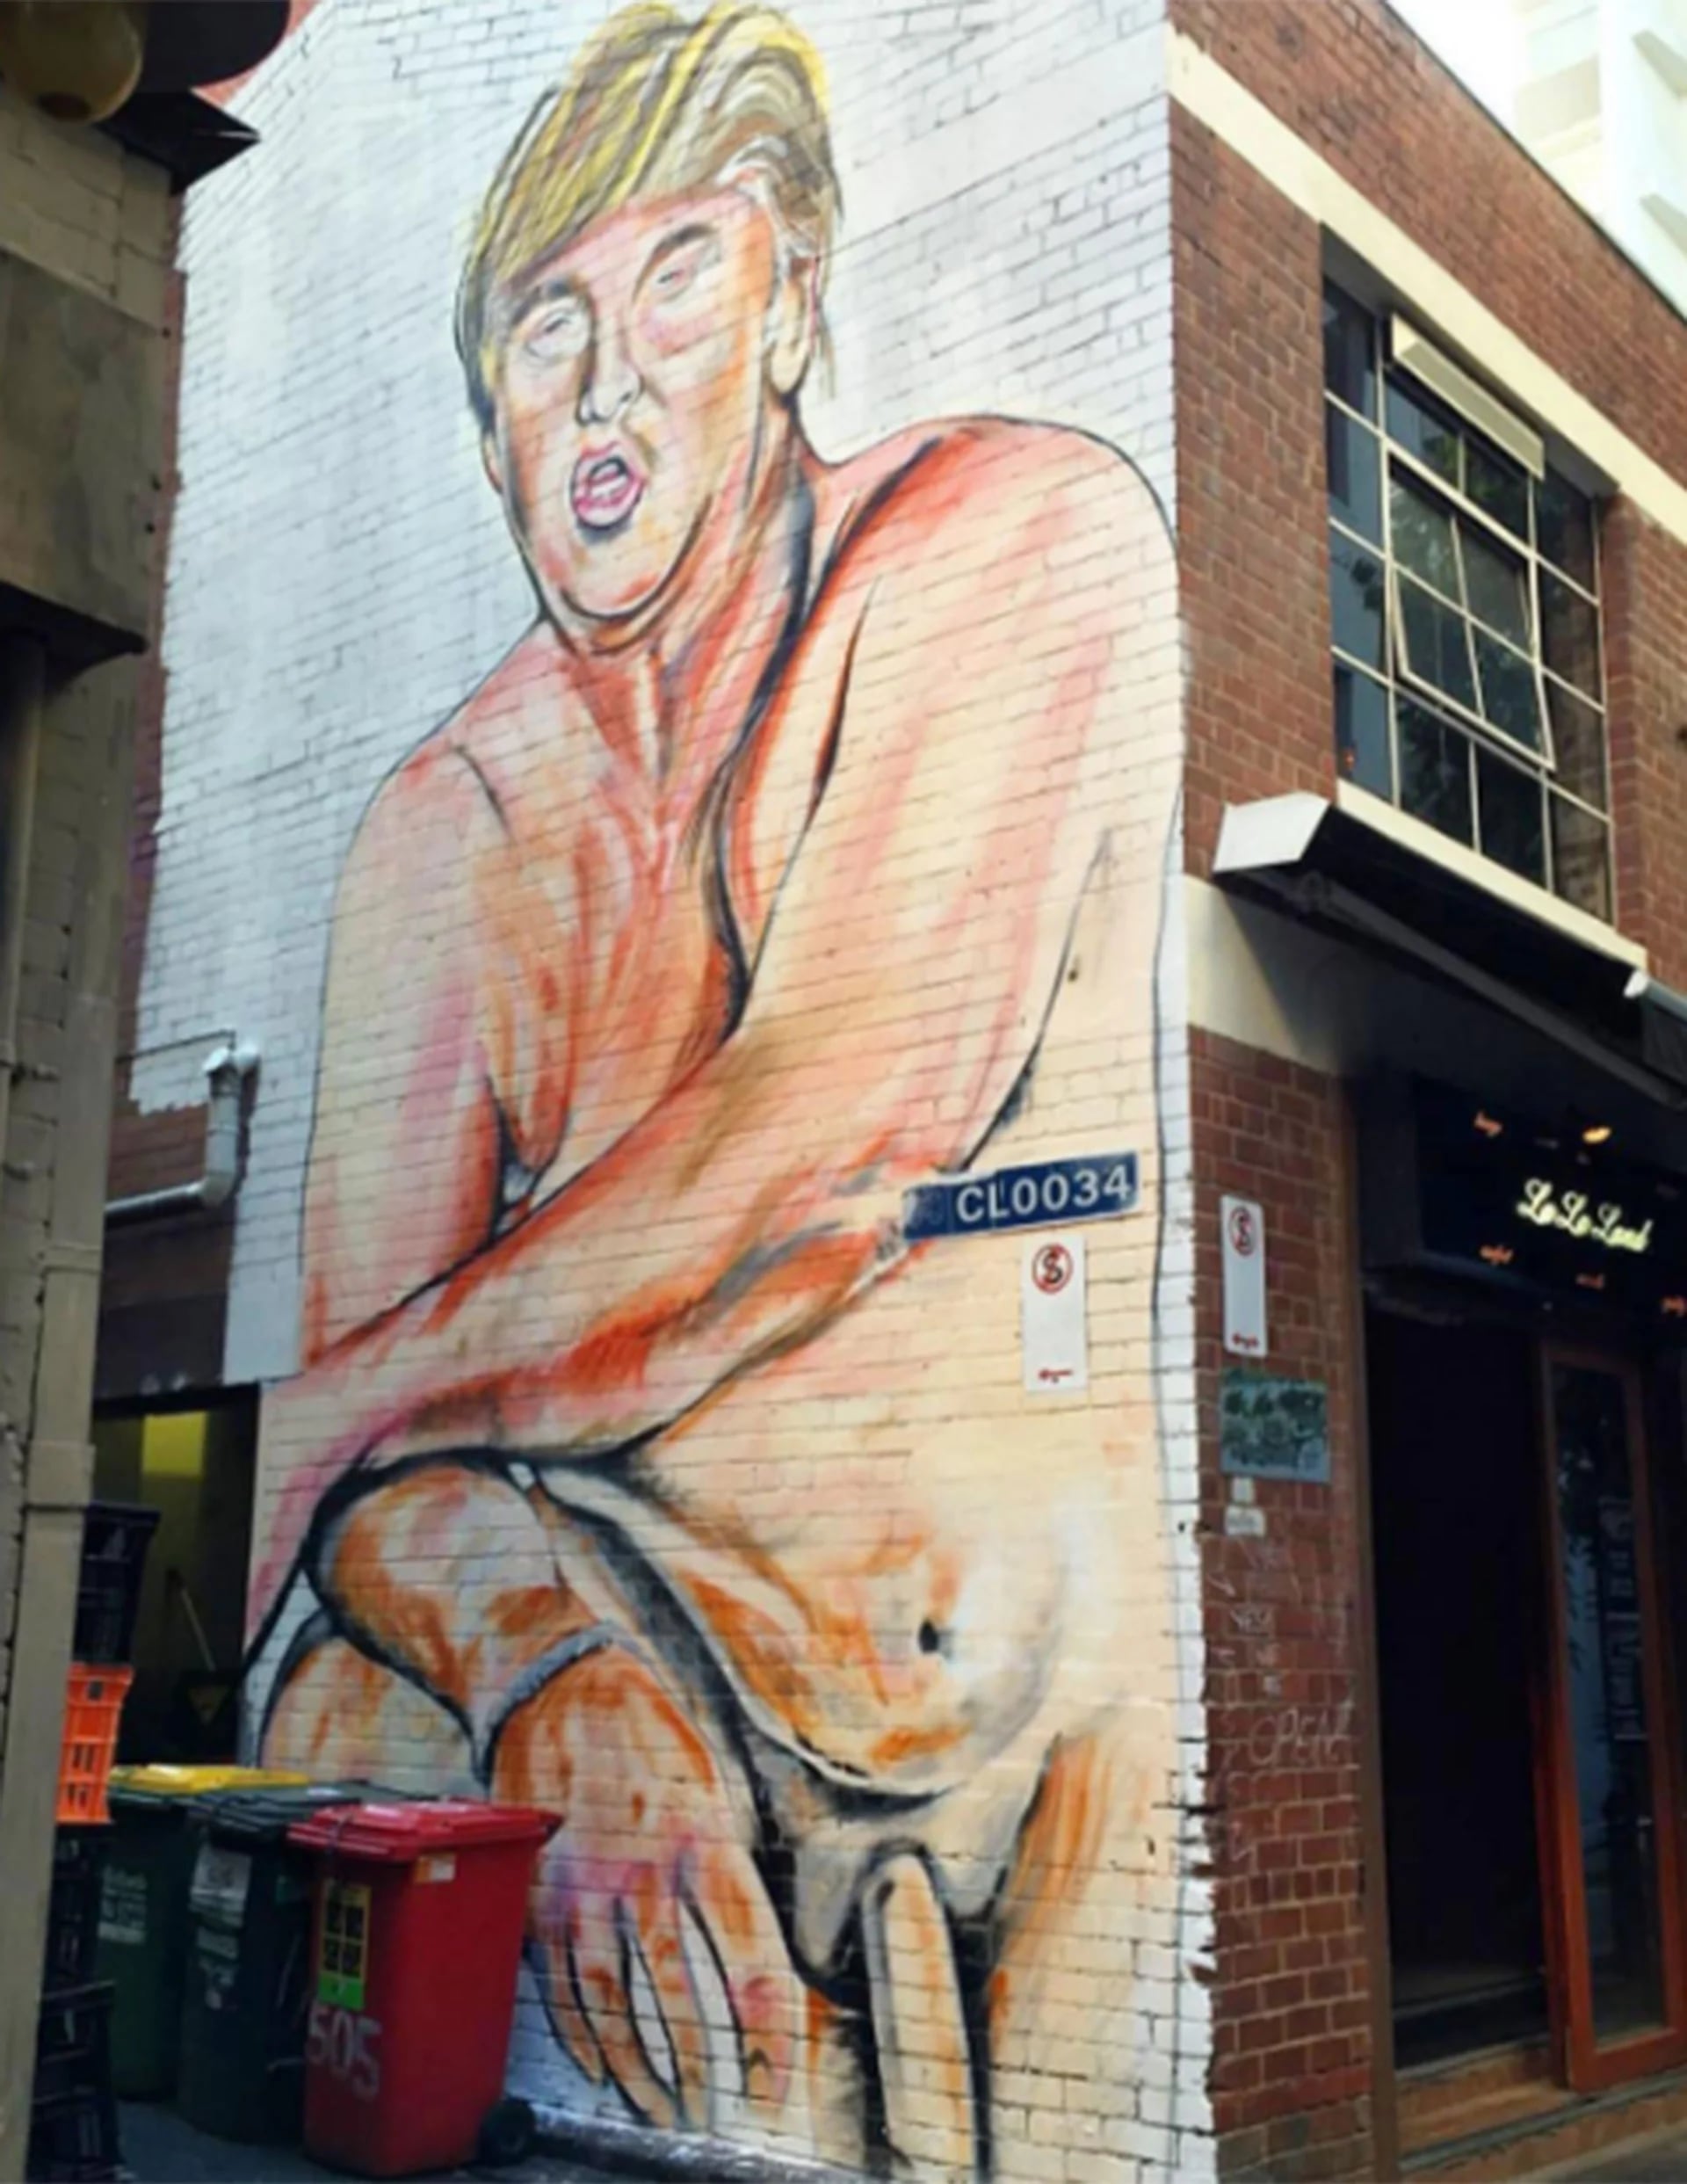 Donald Trump, en otro de los murales de Lushsux